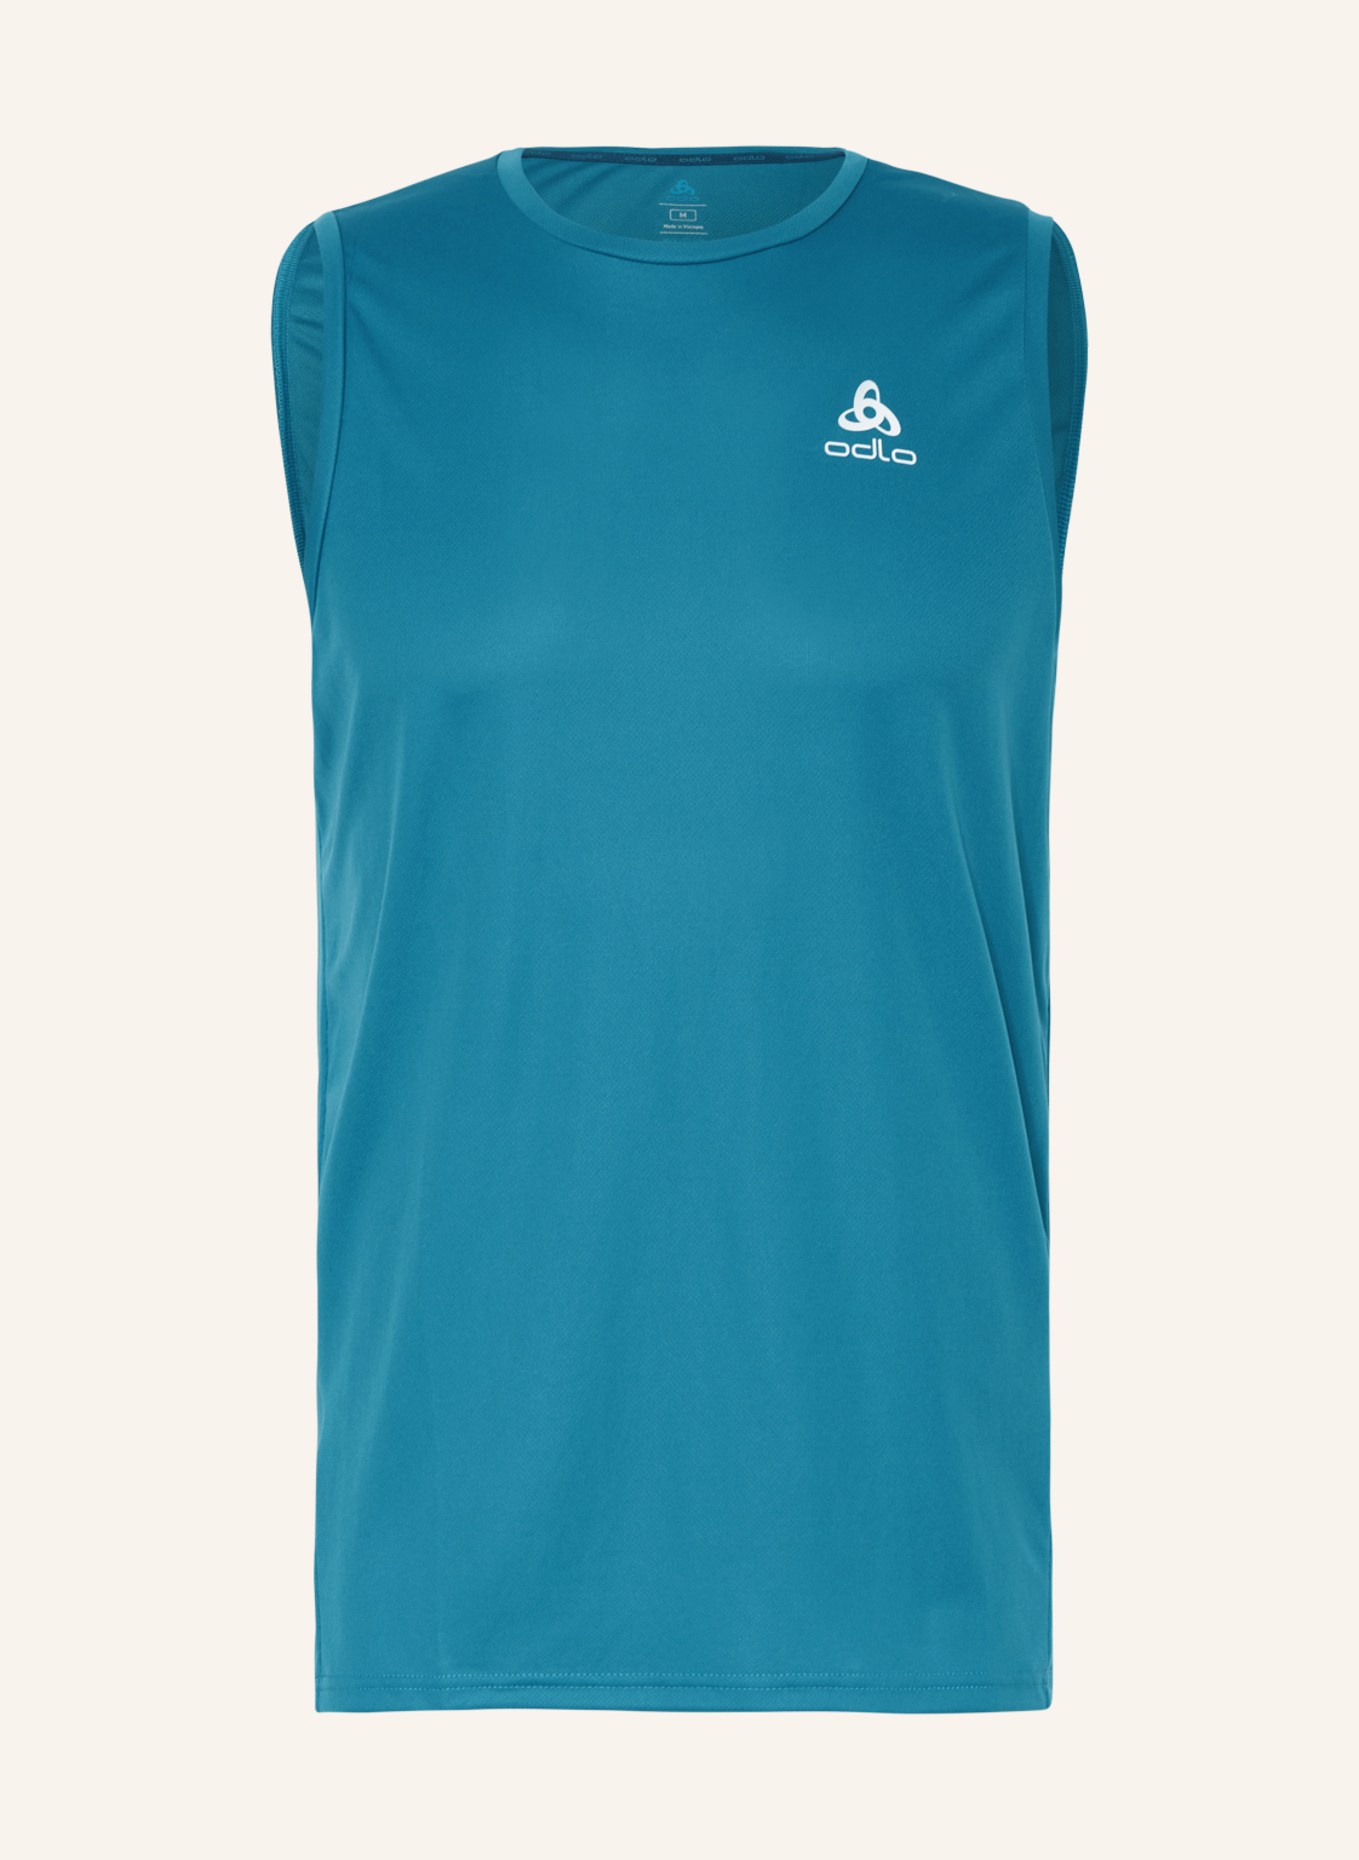 odlo Running shirt ESSENTIAL, Color: TEAL (Image 1)